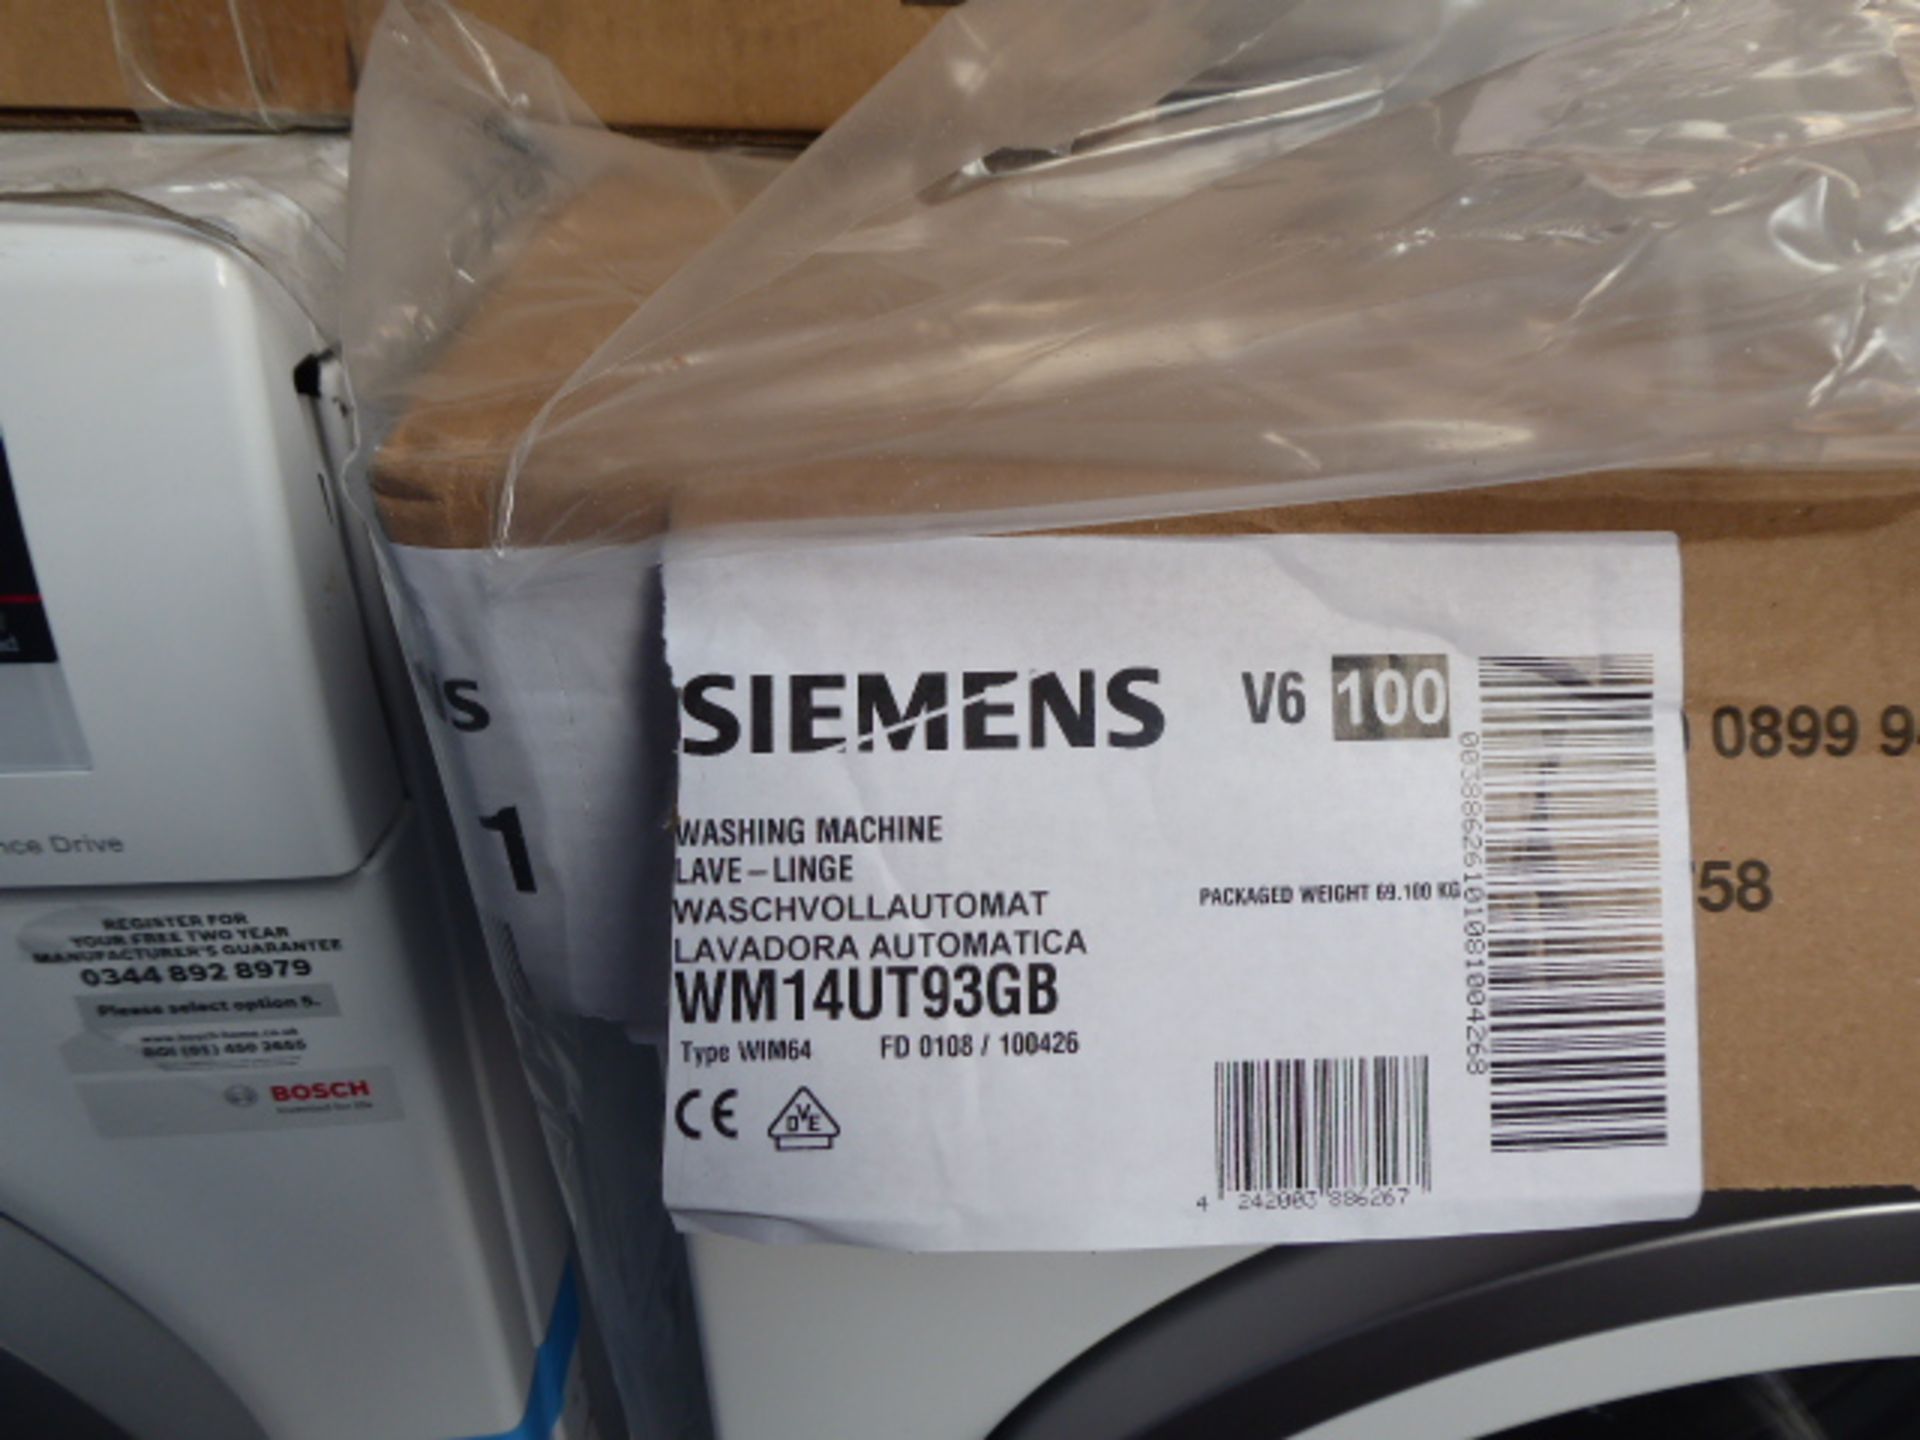 WM14UT93GBB Siemens Washing machine - Image 3 of 3